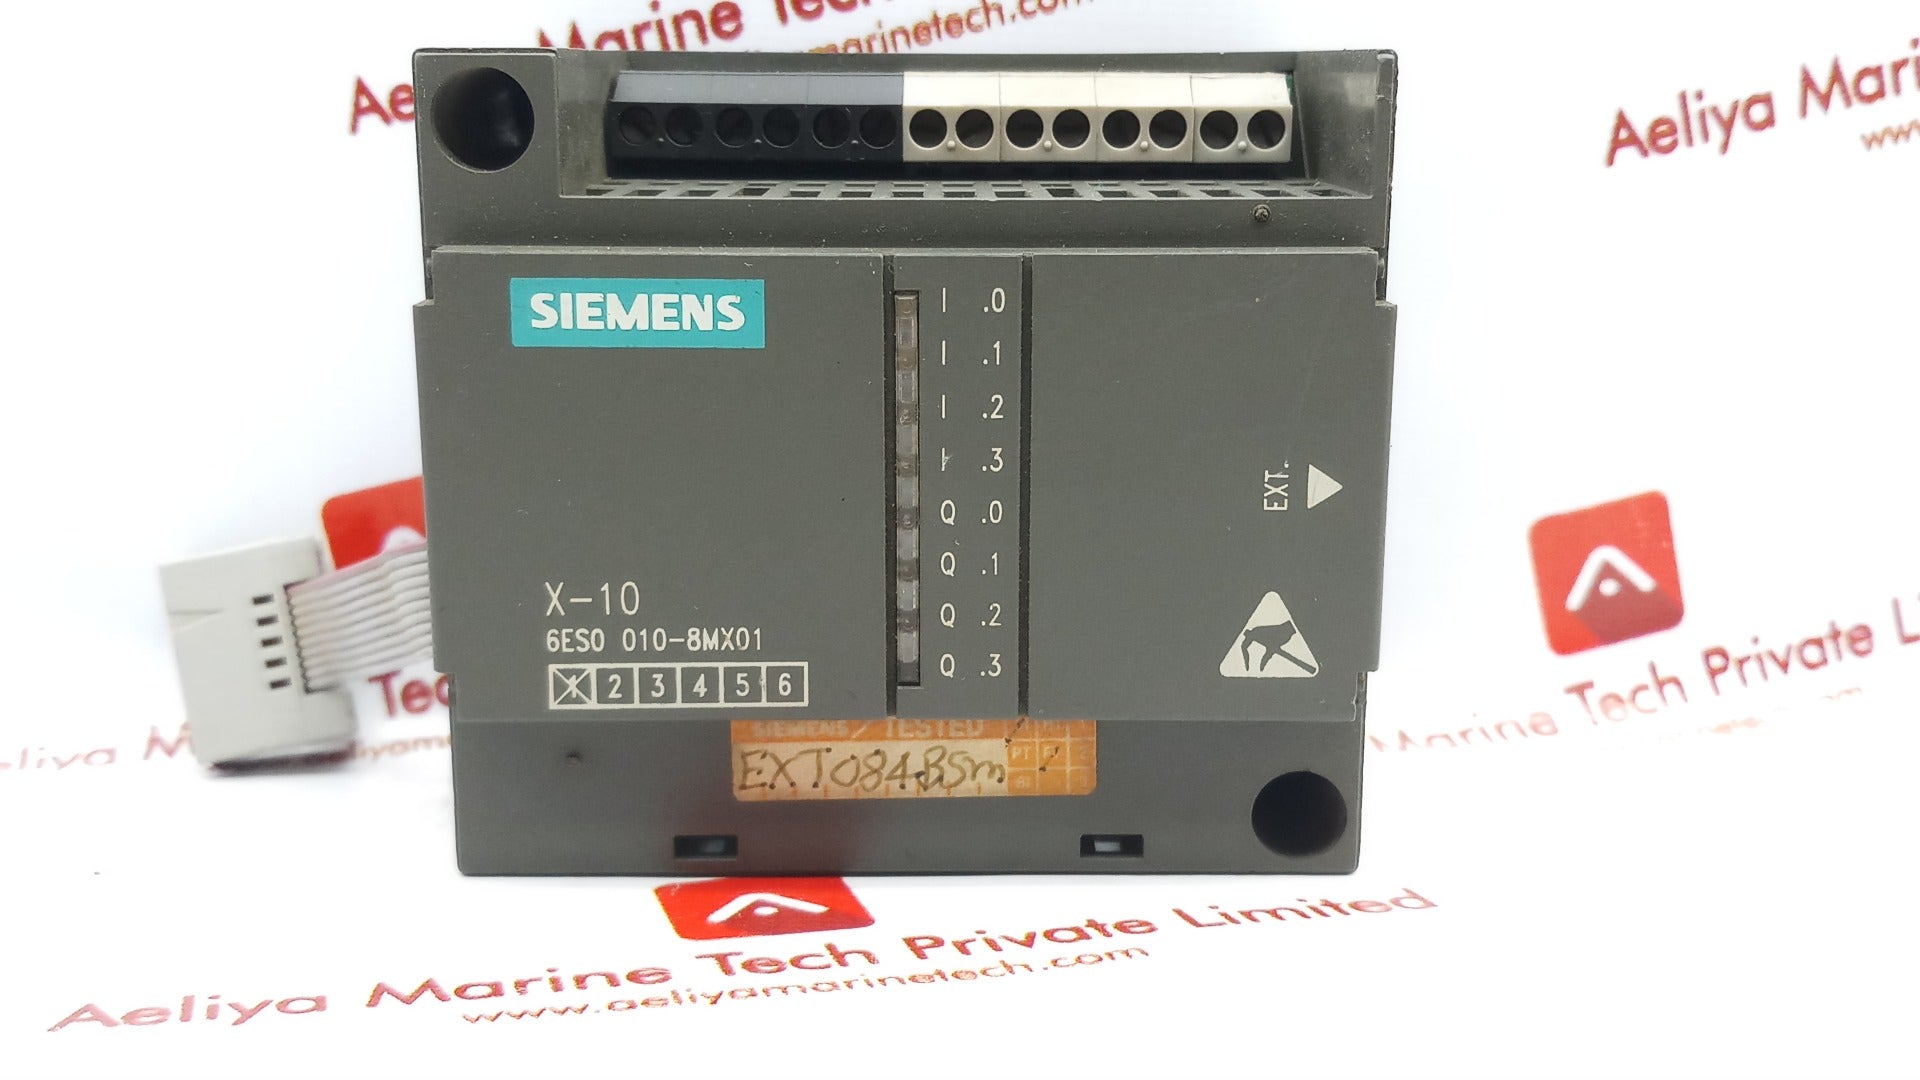 Siemens 6Es0 010-8Mx01 Module